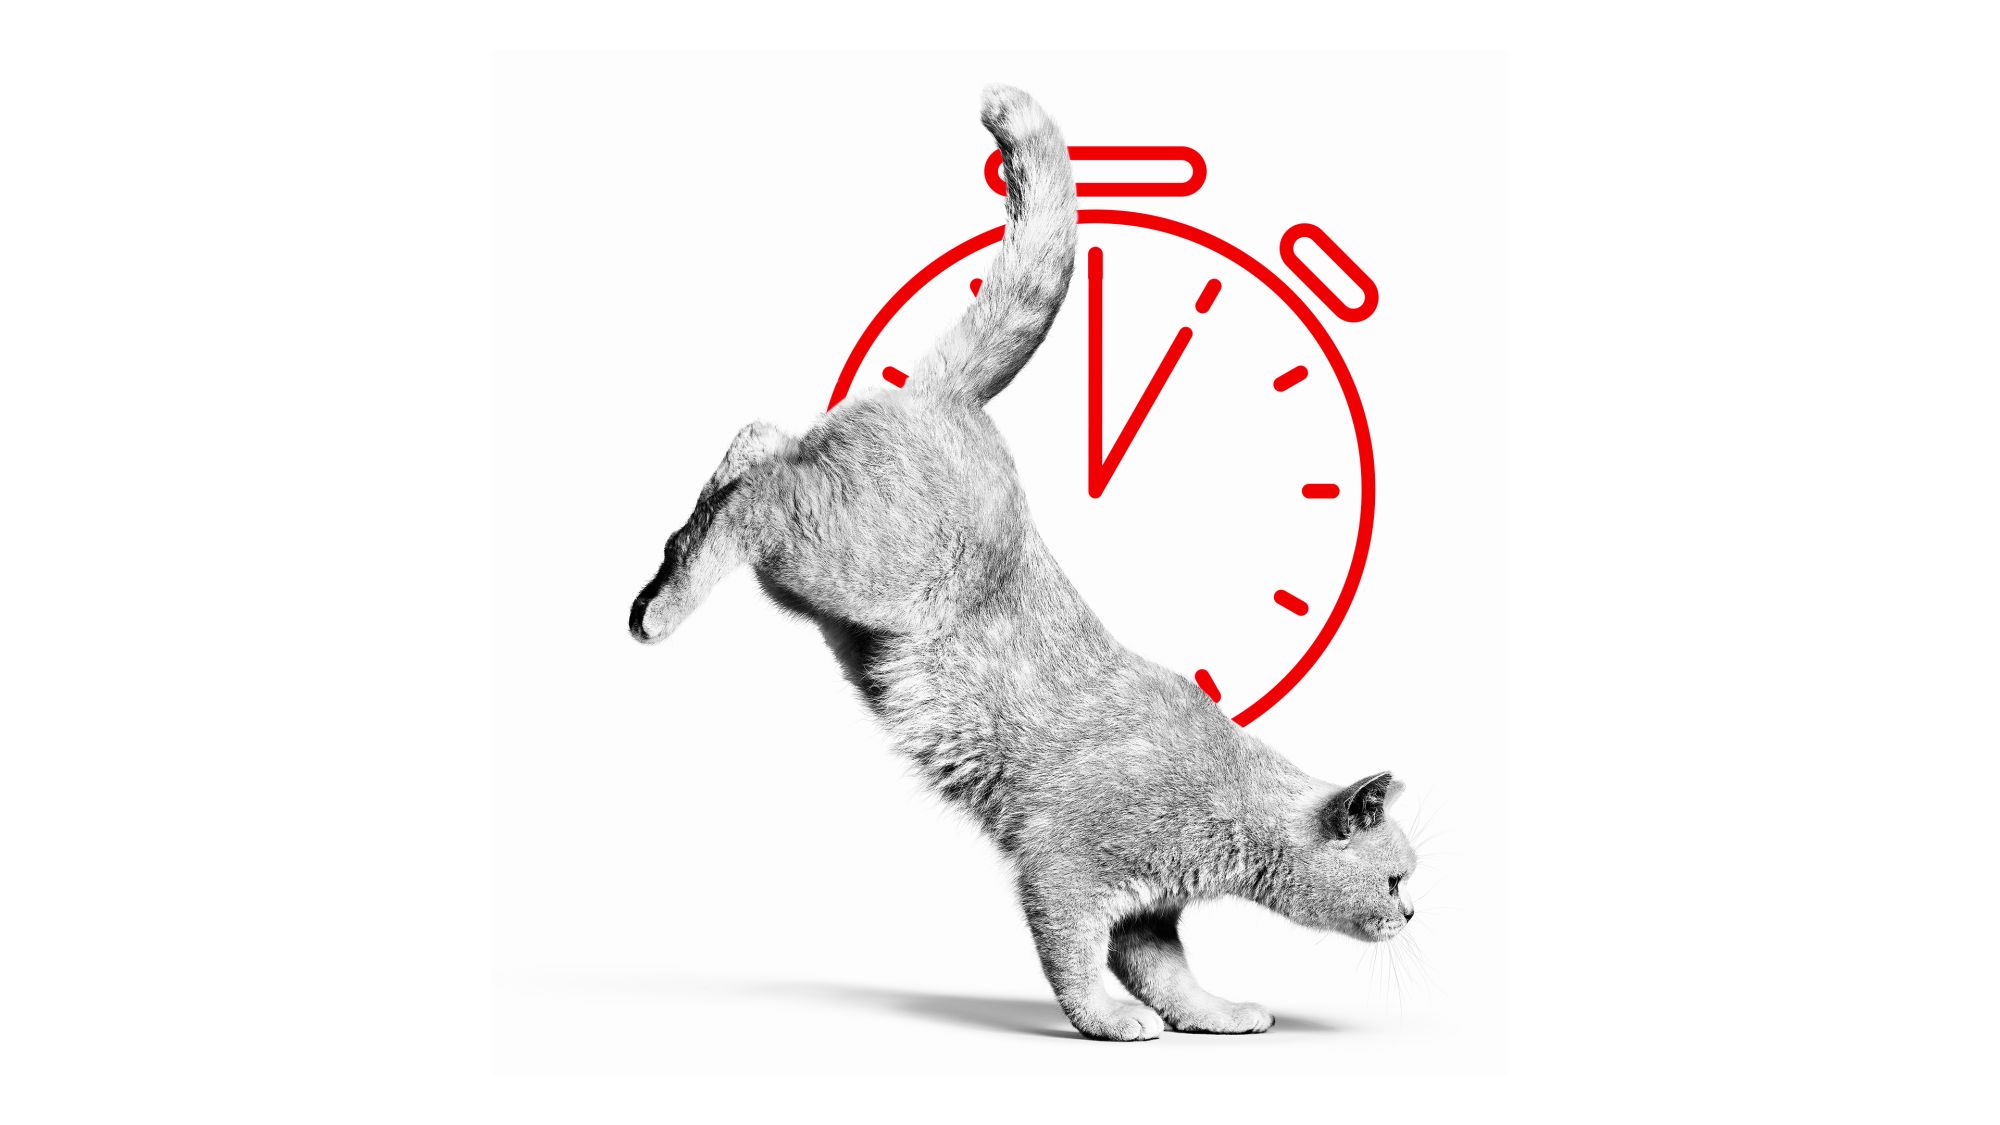 Brits Korthaar volwassen in zwart-wit springen met een rode bal met een stopwatch-illustratie erachter 